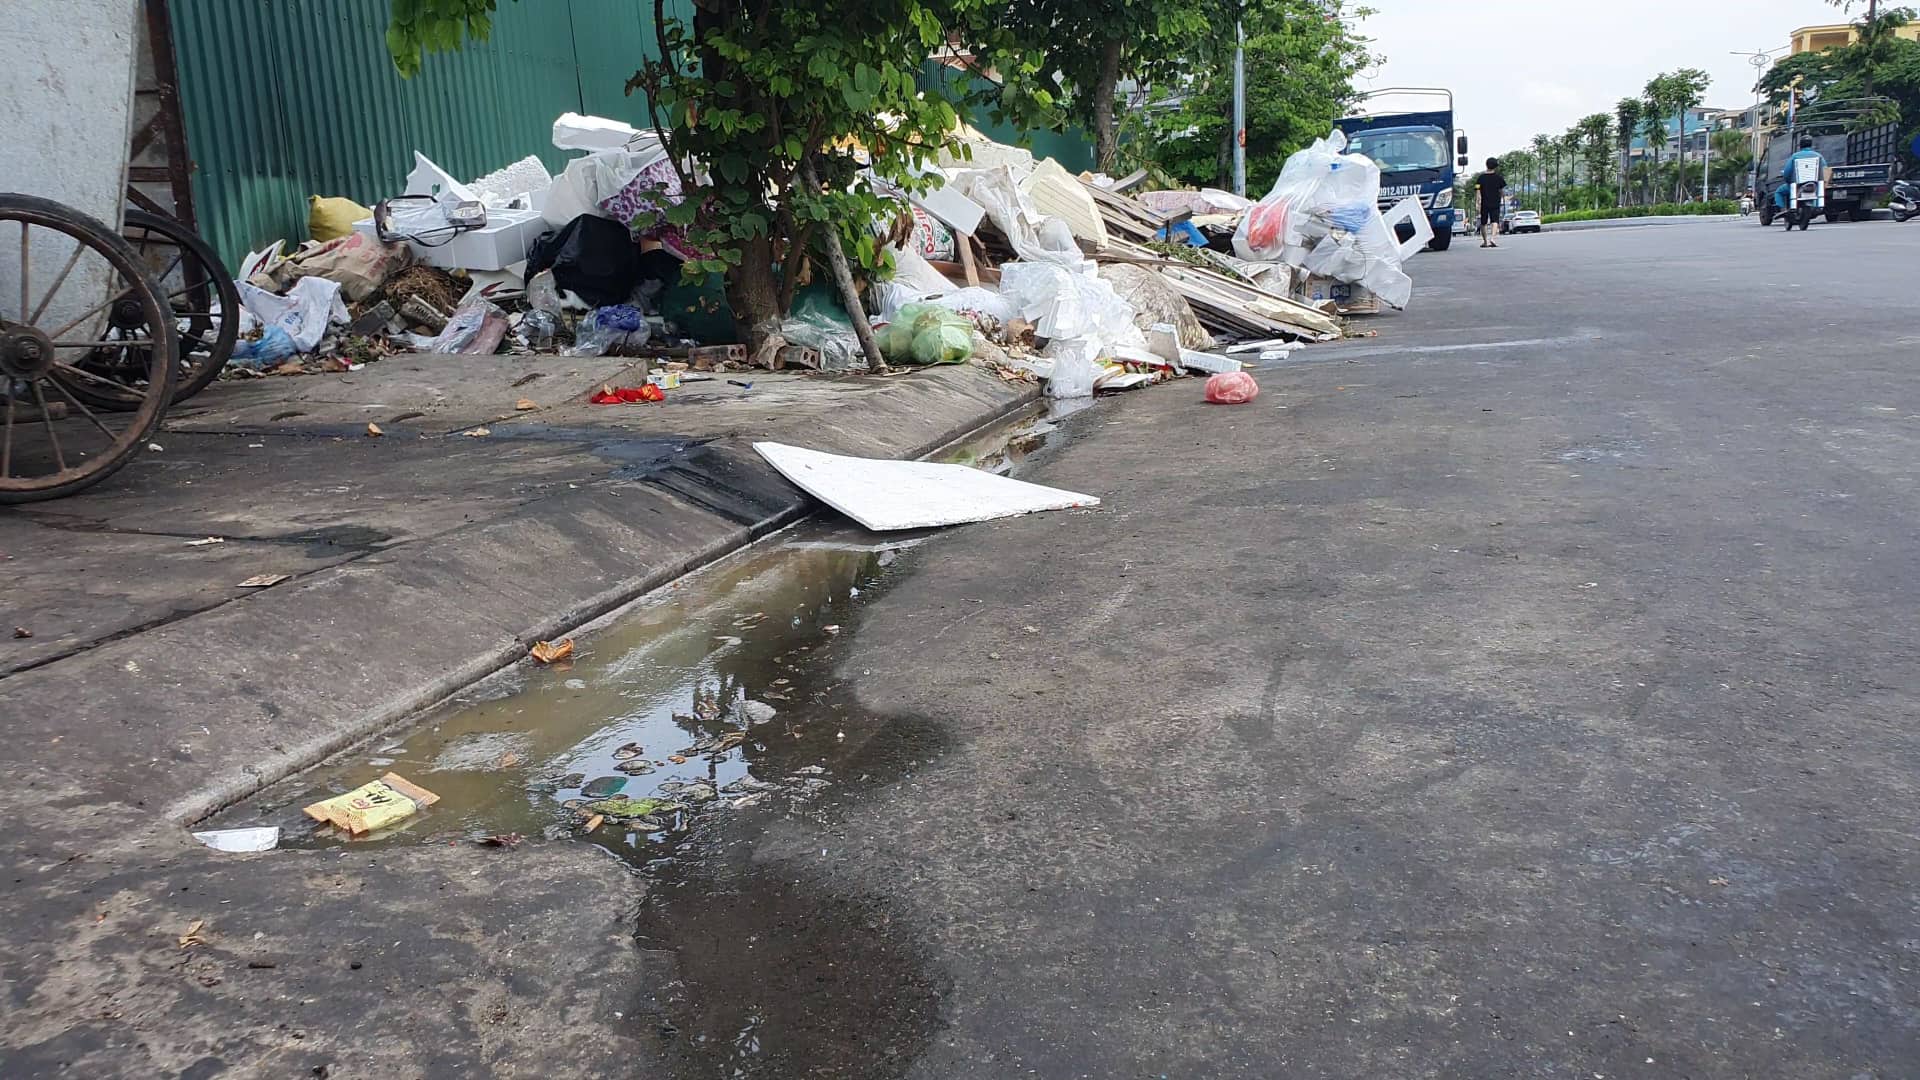 Nước rác thải chảy xuống đất gây bốc mùi hôi thối nồng nặc tại cổng chợ Hạ Long 3 (P. Hồng Hải)